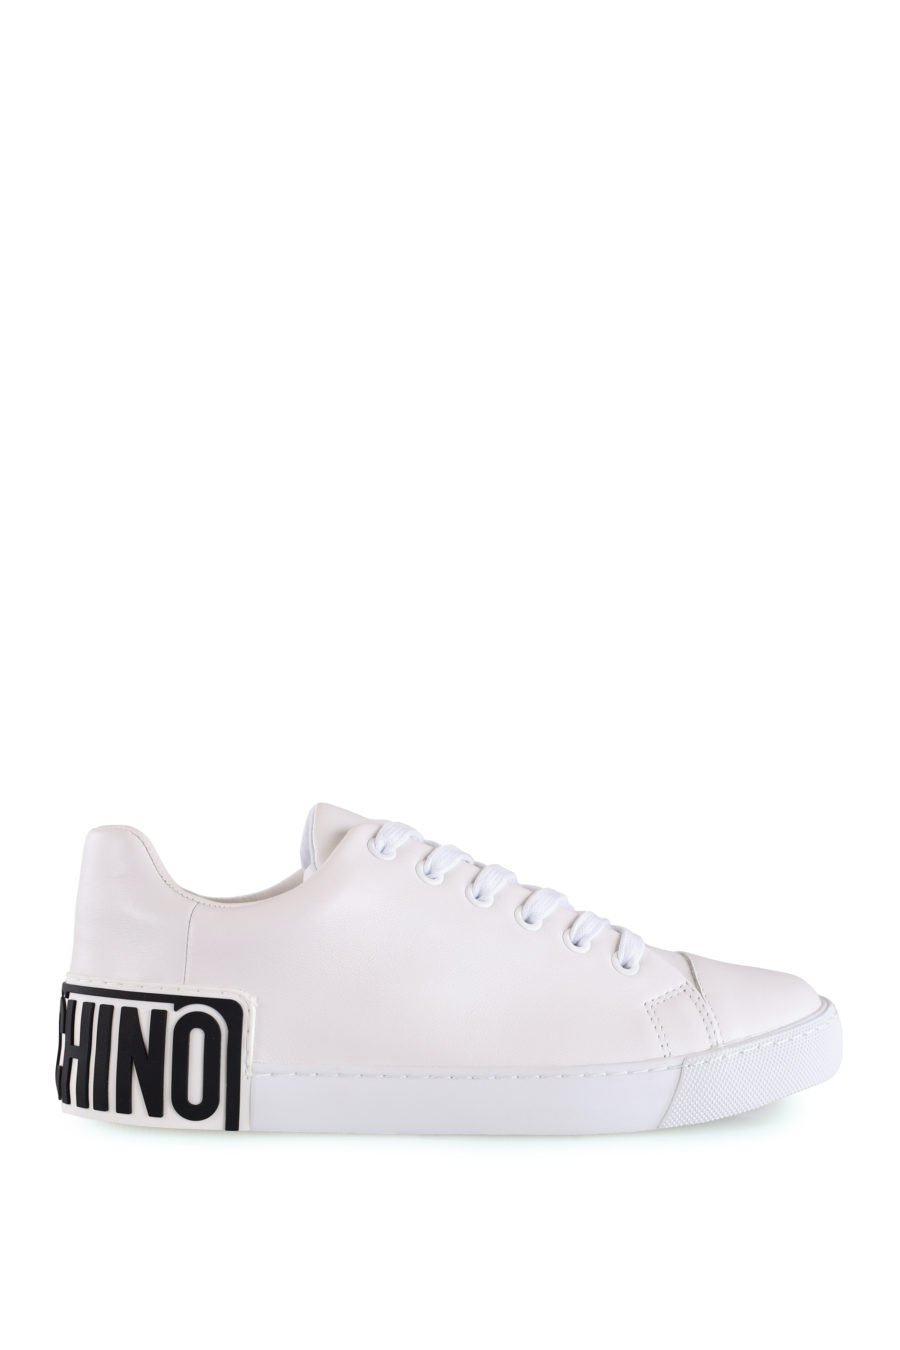 Zapatillas blancas con logo de goma - IMG 8484 copia